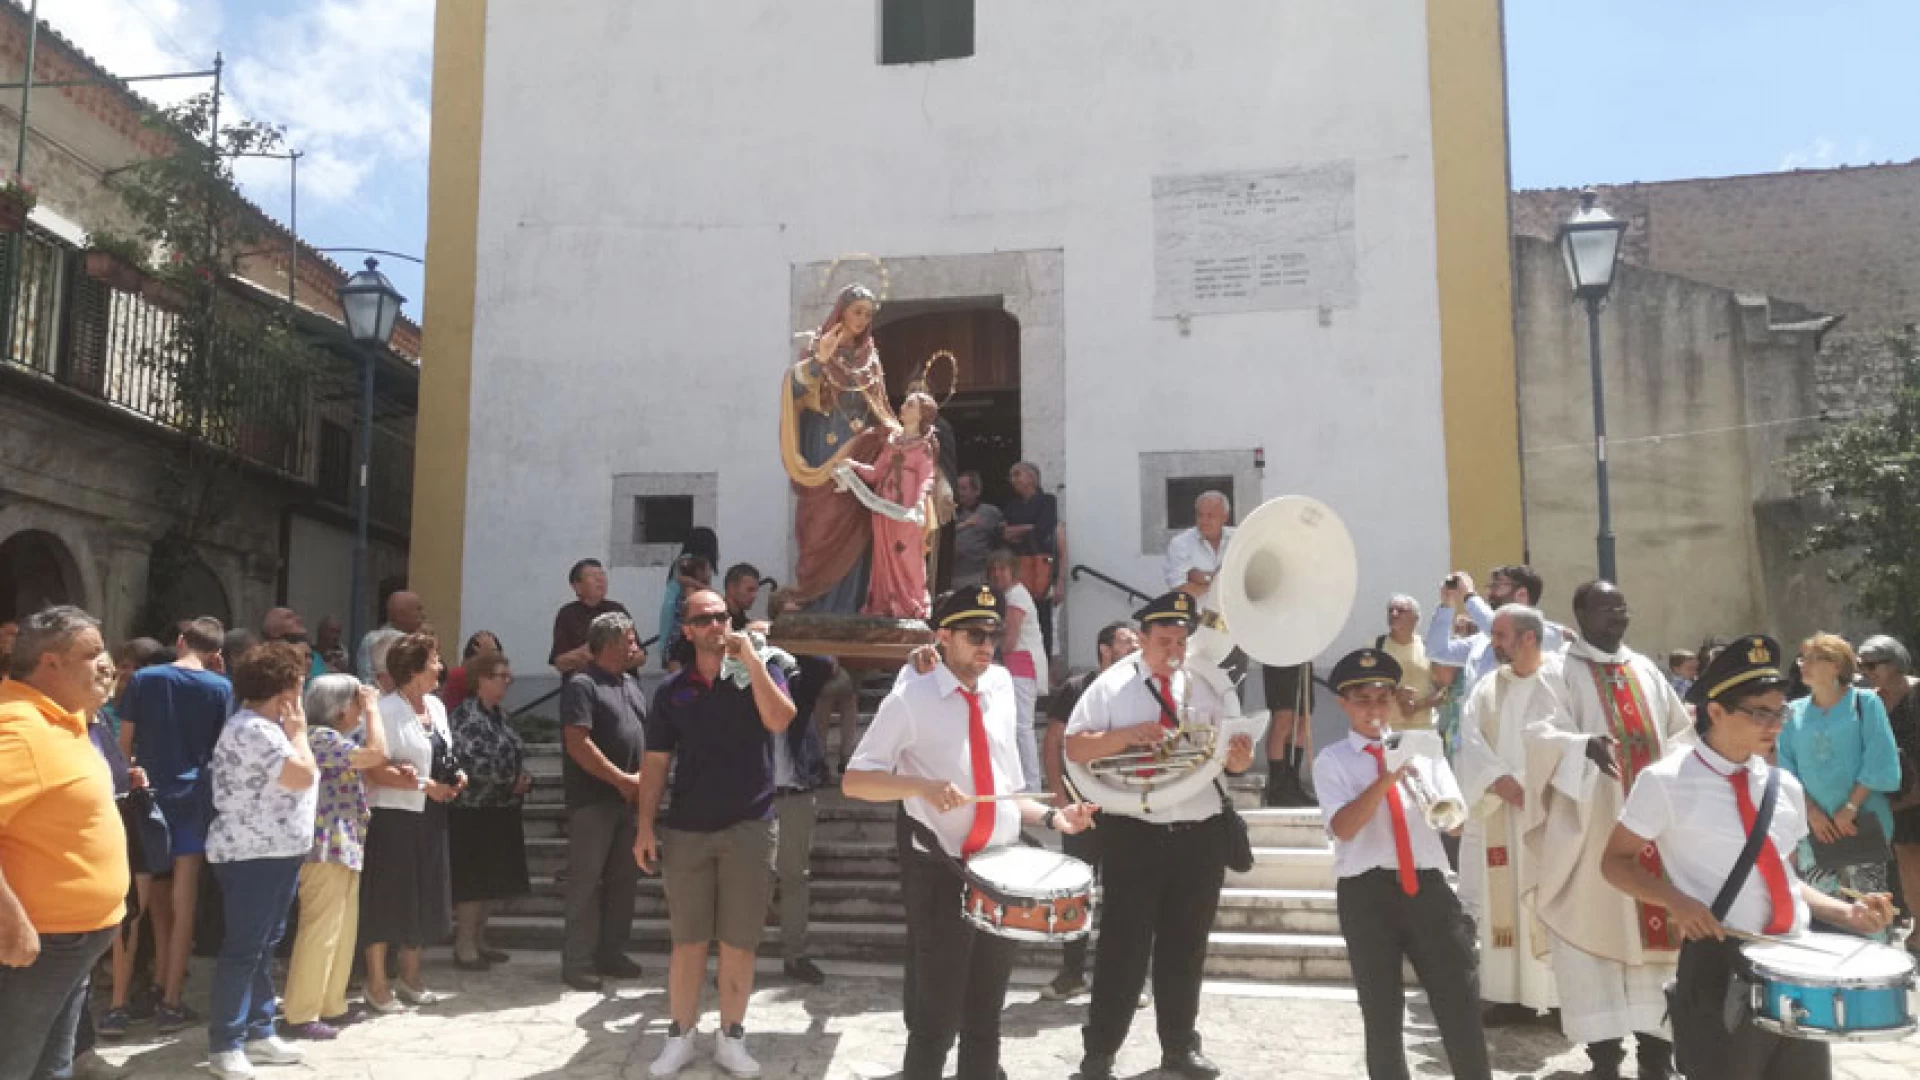 Colli e Selvone unite dal pellegrinaggio in onore di Sant'Anna. Ripetuti i solenni festeggiamenti.